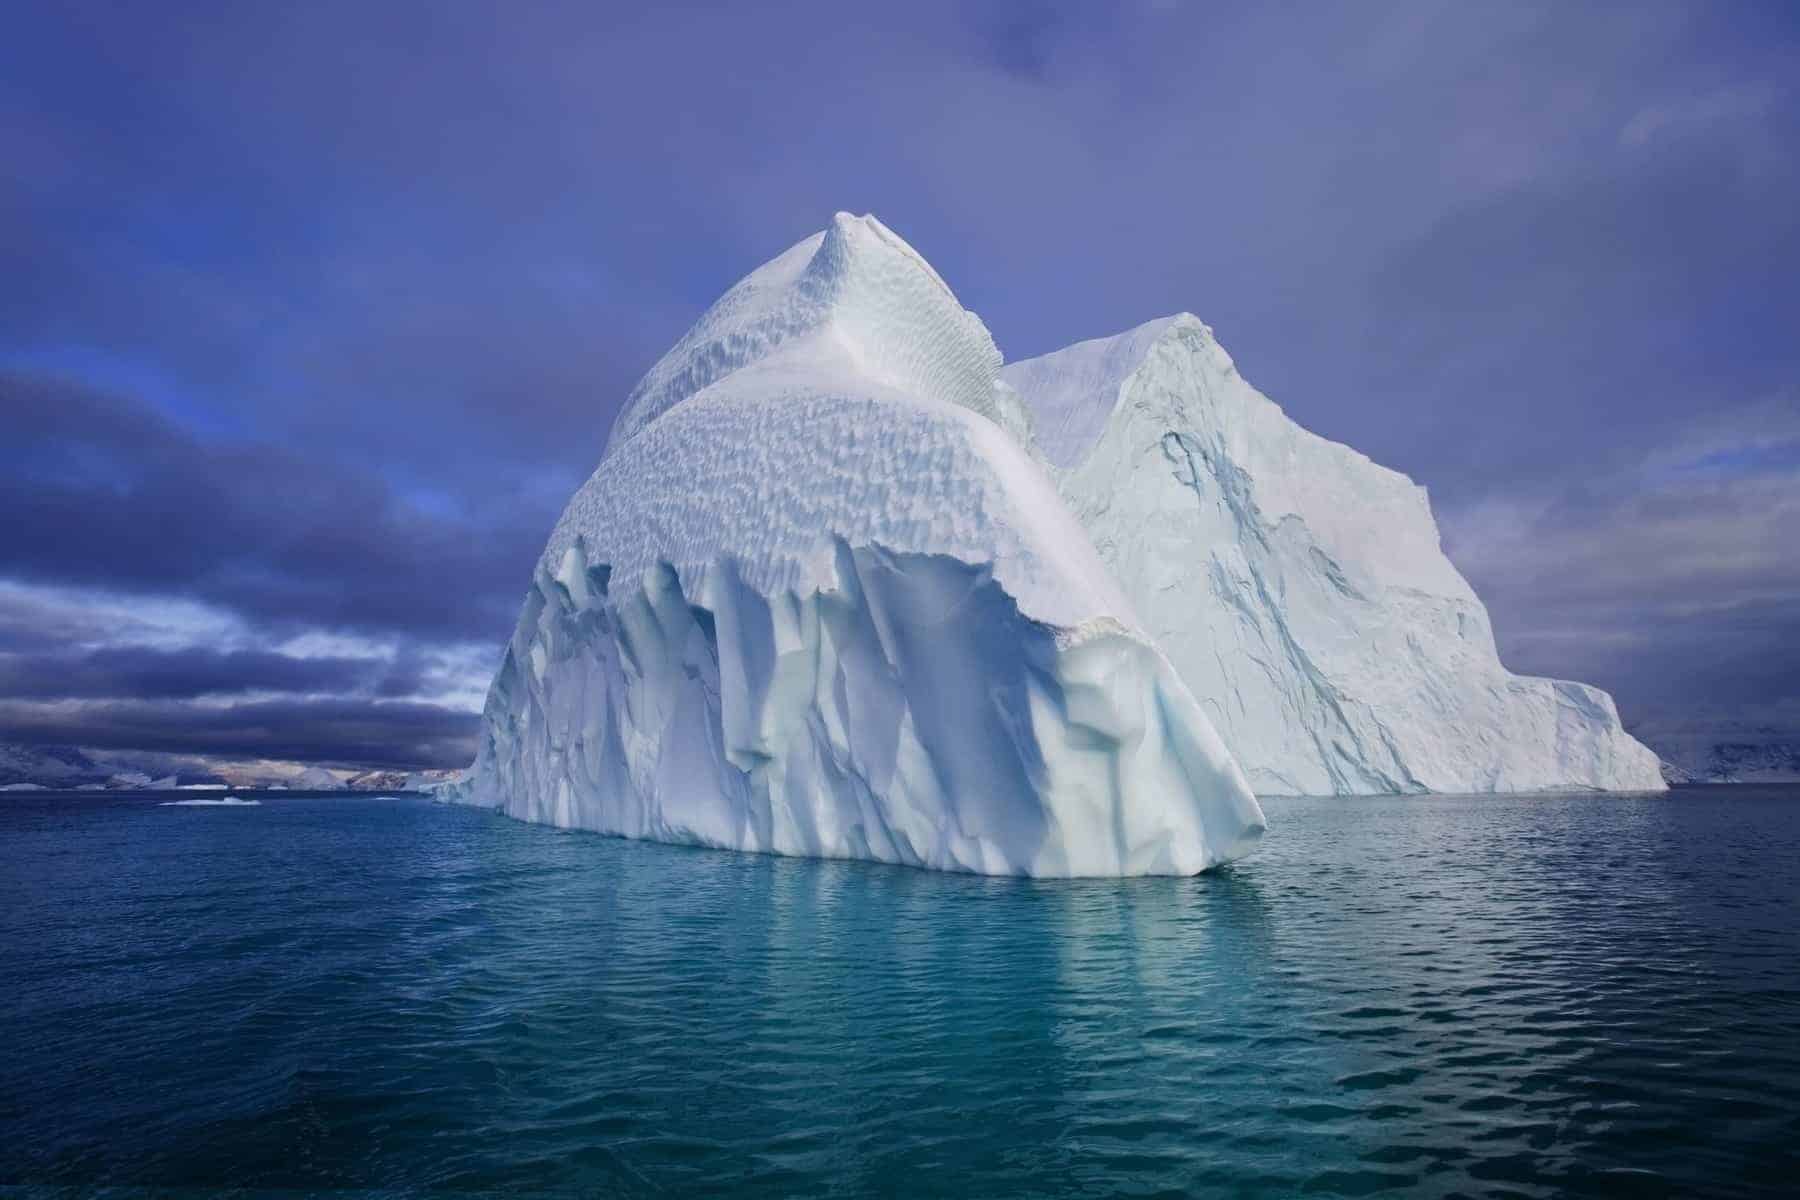 Iceberg in the Iceberg graveyard in Franz Joseph Fjord in eastern Greenland